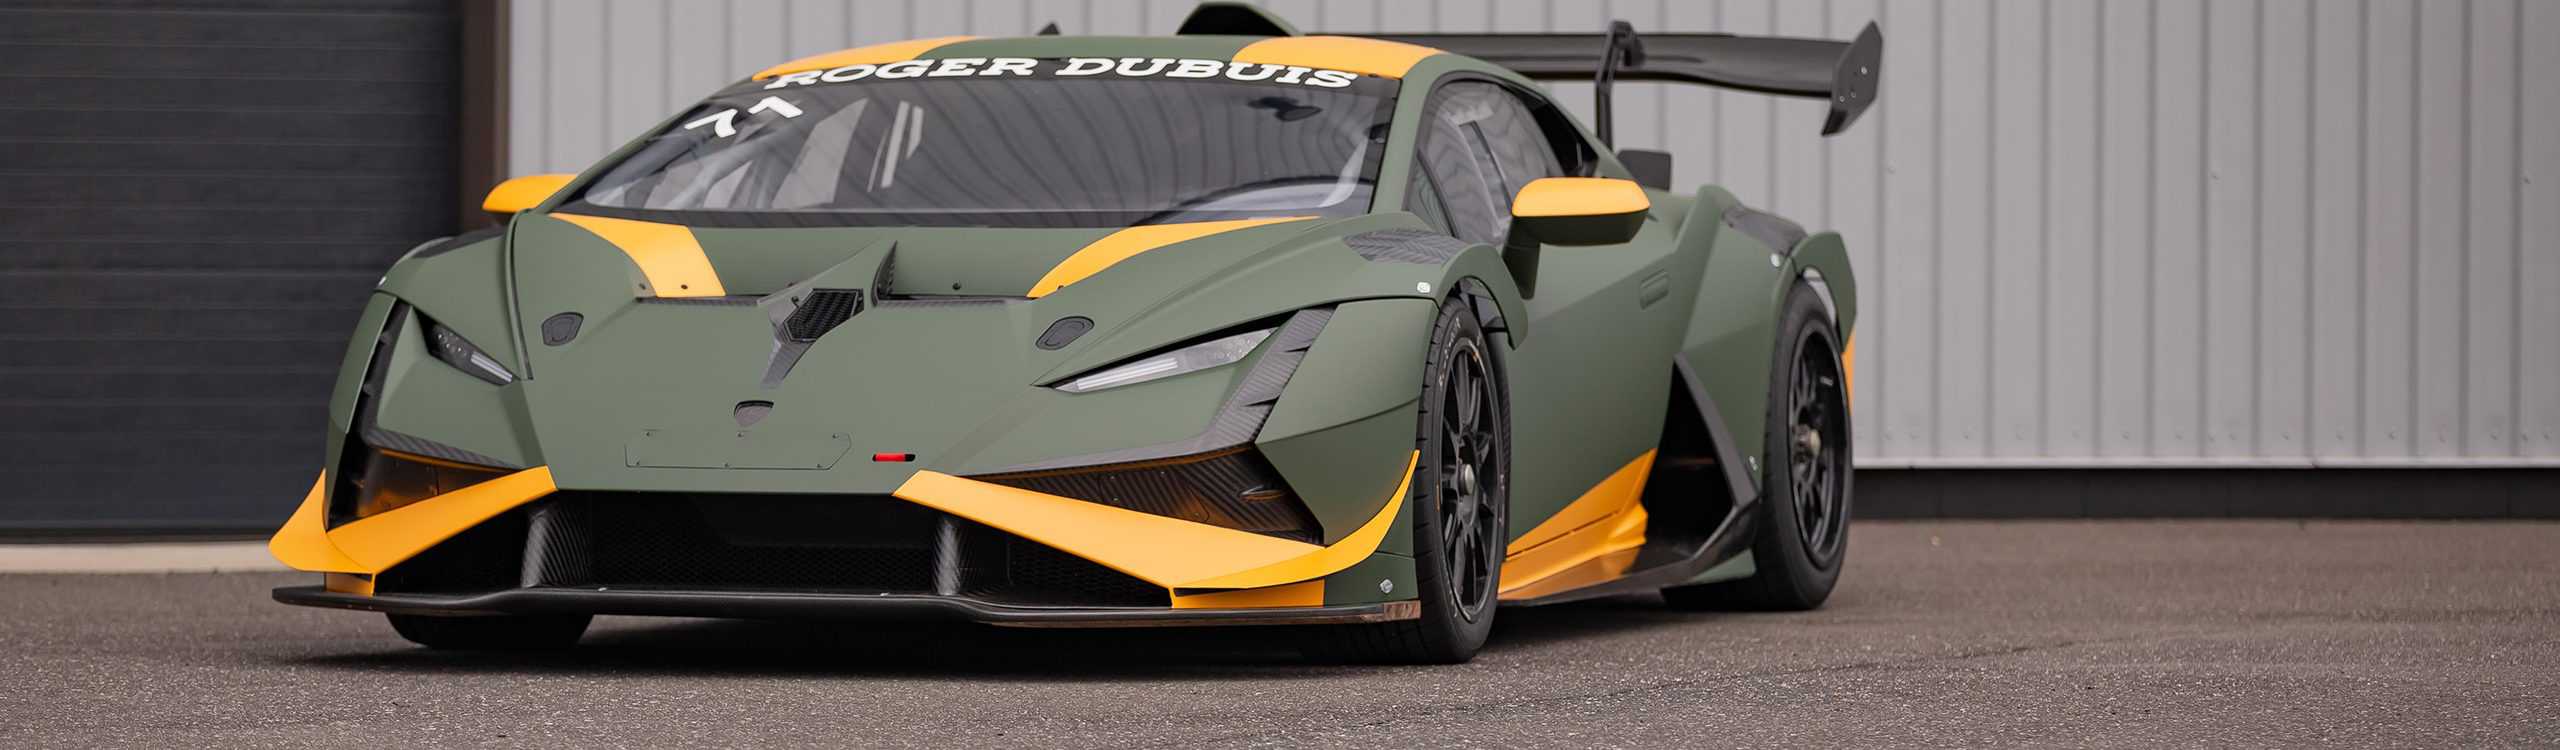 Building the Bull | Race prepping the Lamborghini Super Trofeo race car